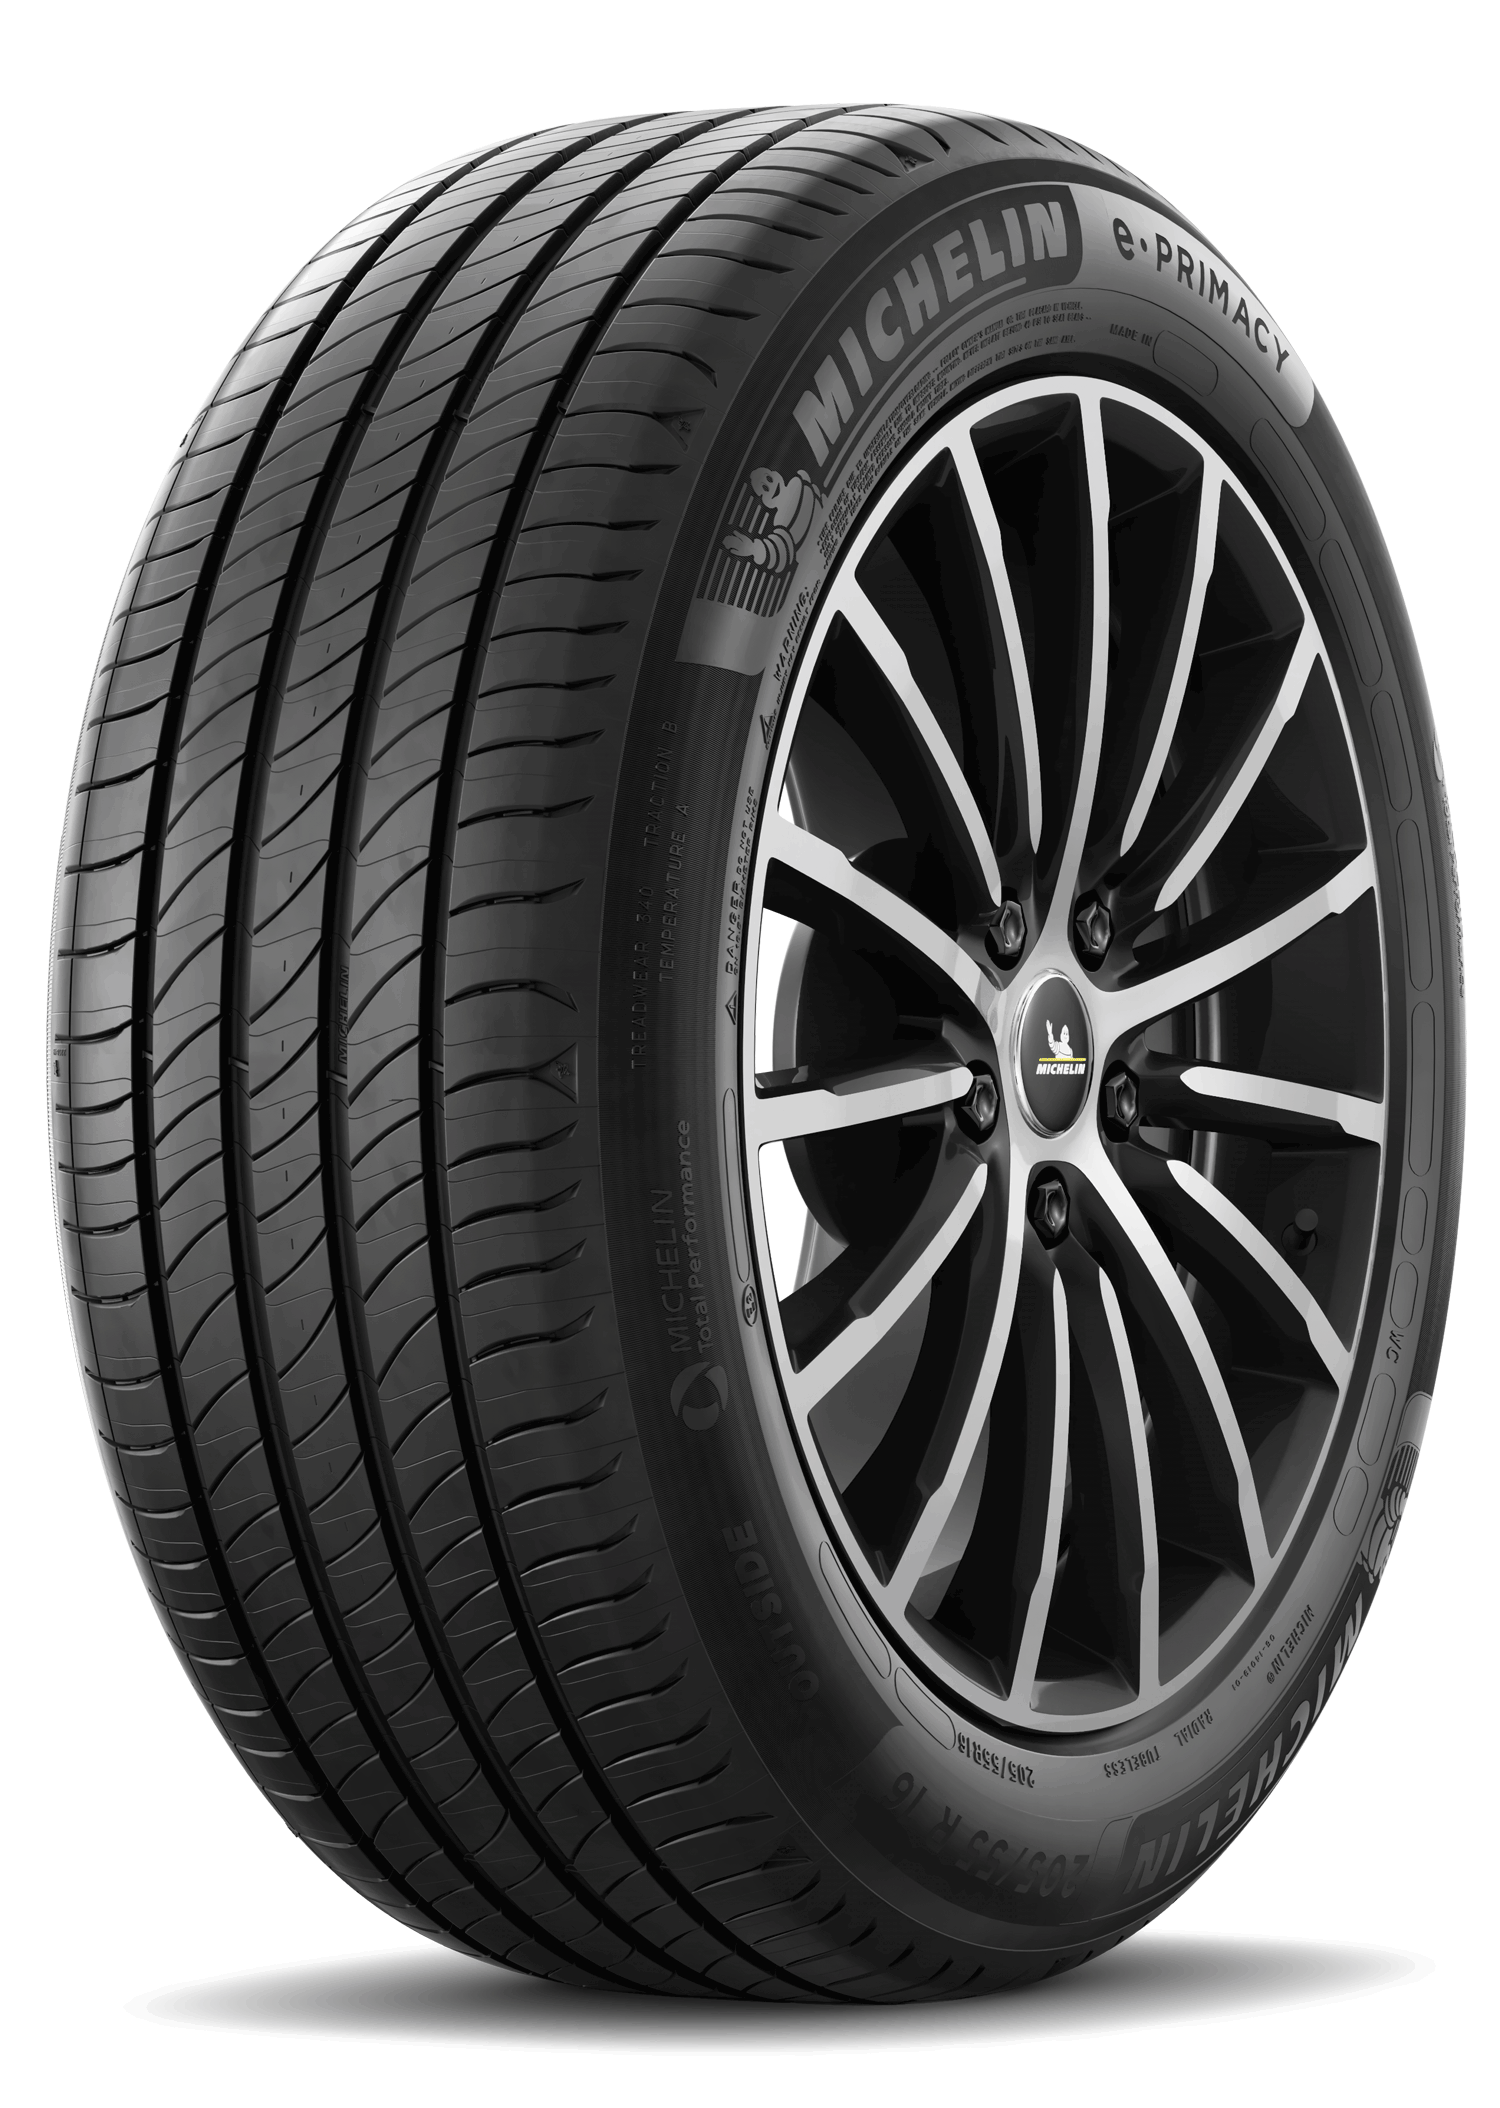 Móvil asiático oferta Neumáticos de Verano Michelin 185/60 R15 84H E PRIMACY | eBay